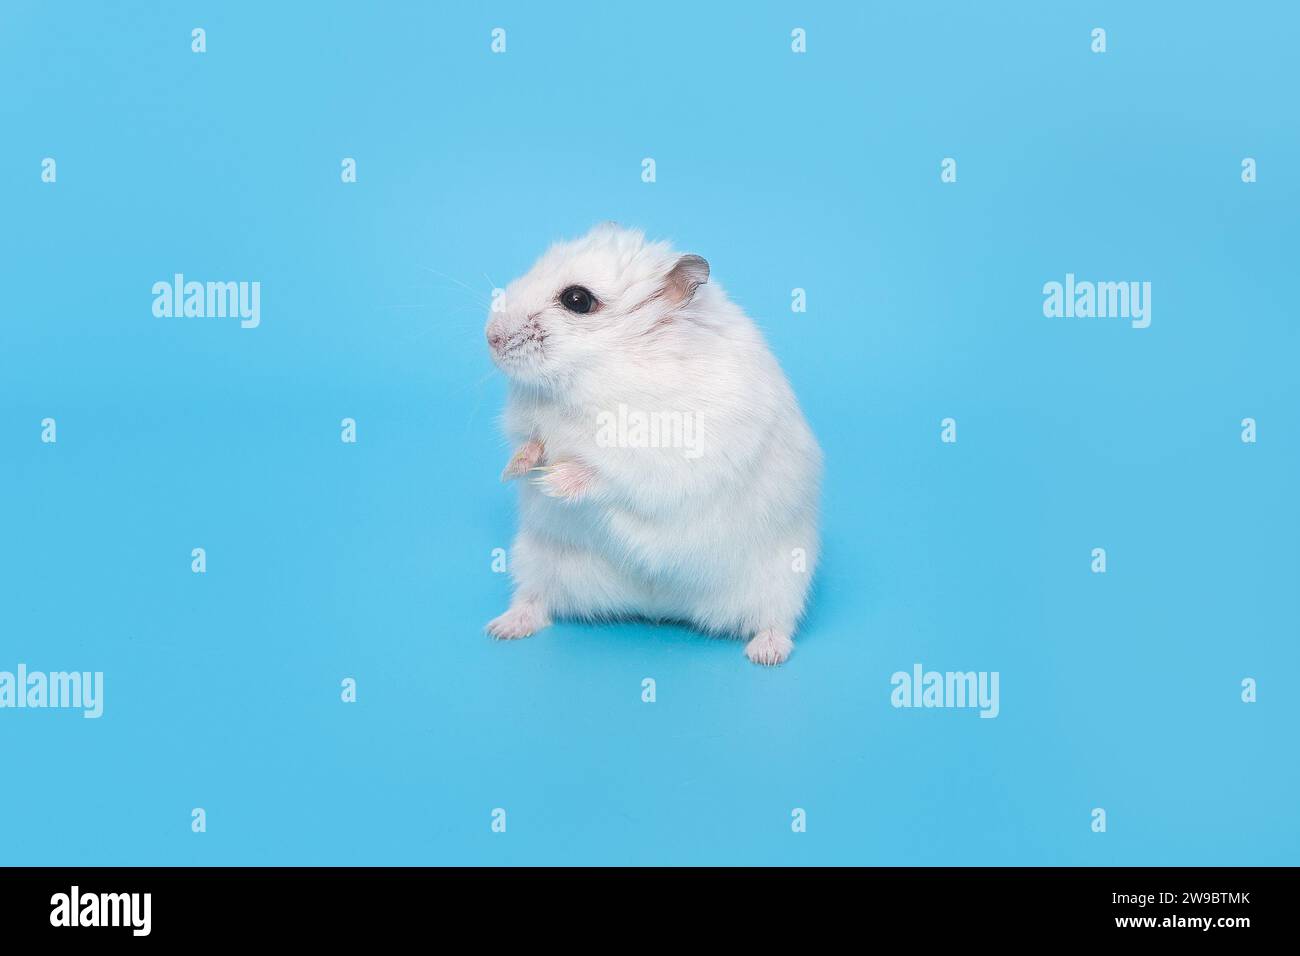 Petit hamster dzungarian blanc se tient dans une pose drôle sur un fond bleu Banque D'Images